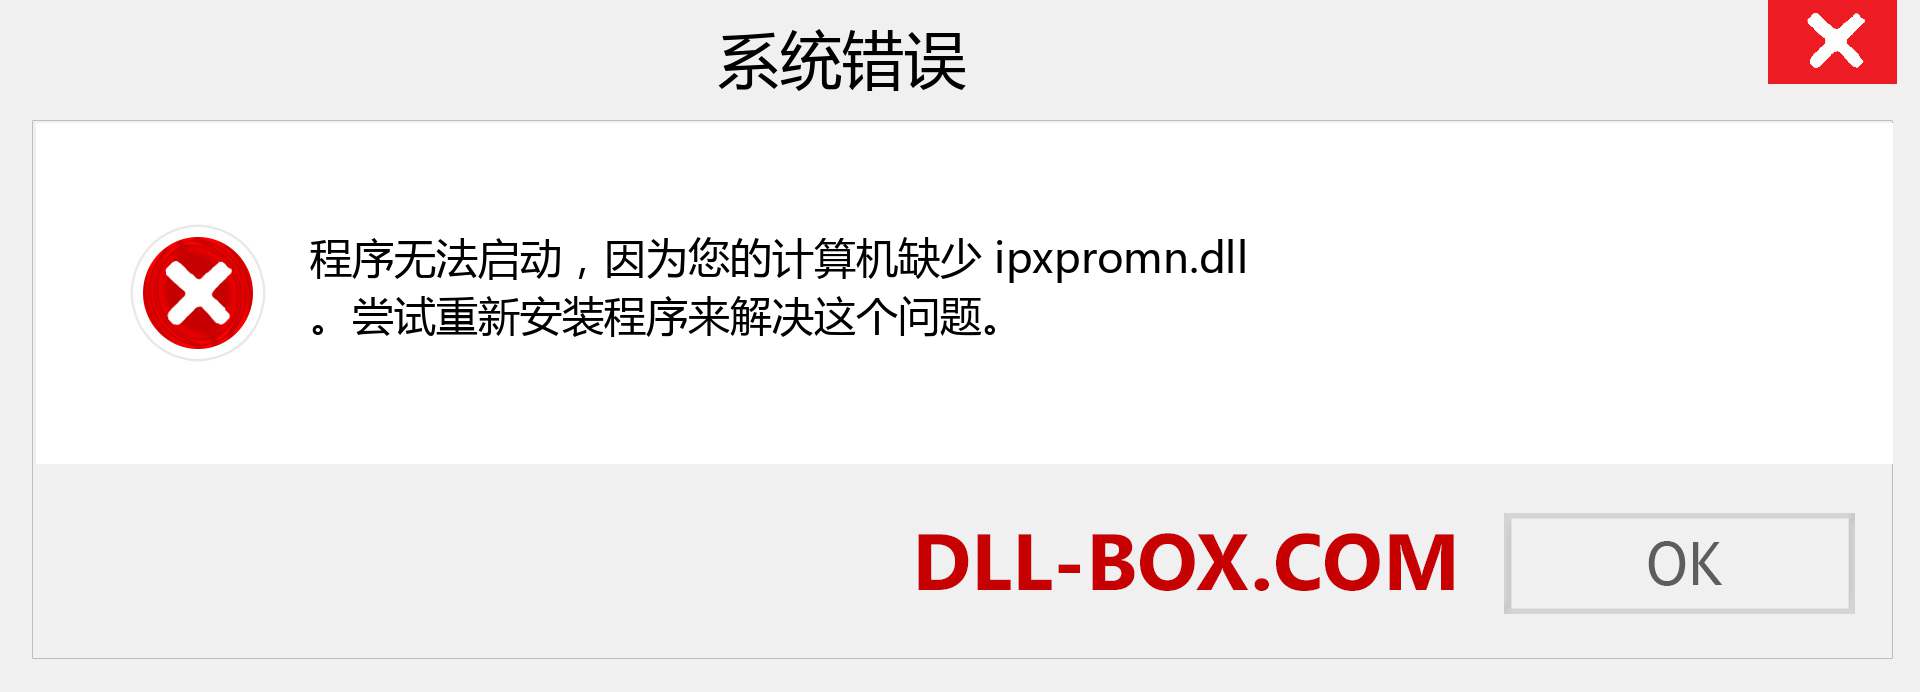 ipxpromn.dll 文件丢失？。 适用于 Windows 7、8、10 的下载 - 修复 Windows、照片、图像上的 ipxpromn dll 丢失错误